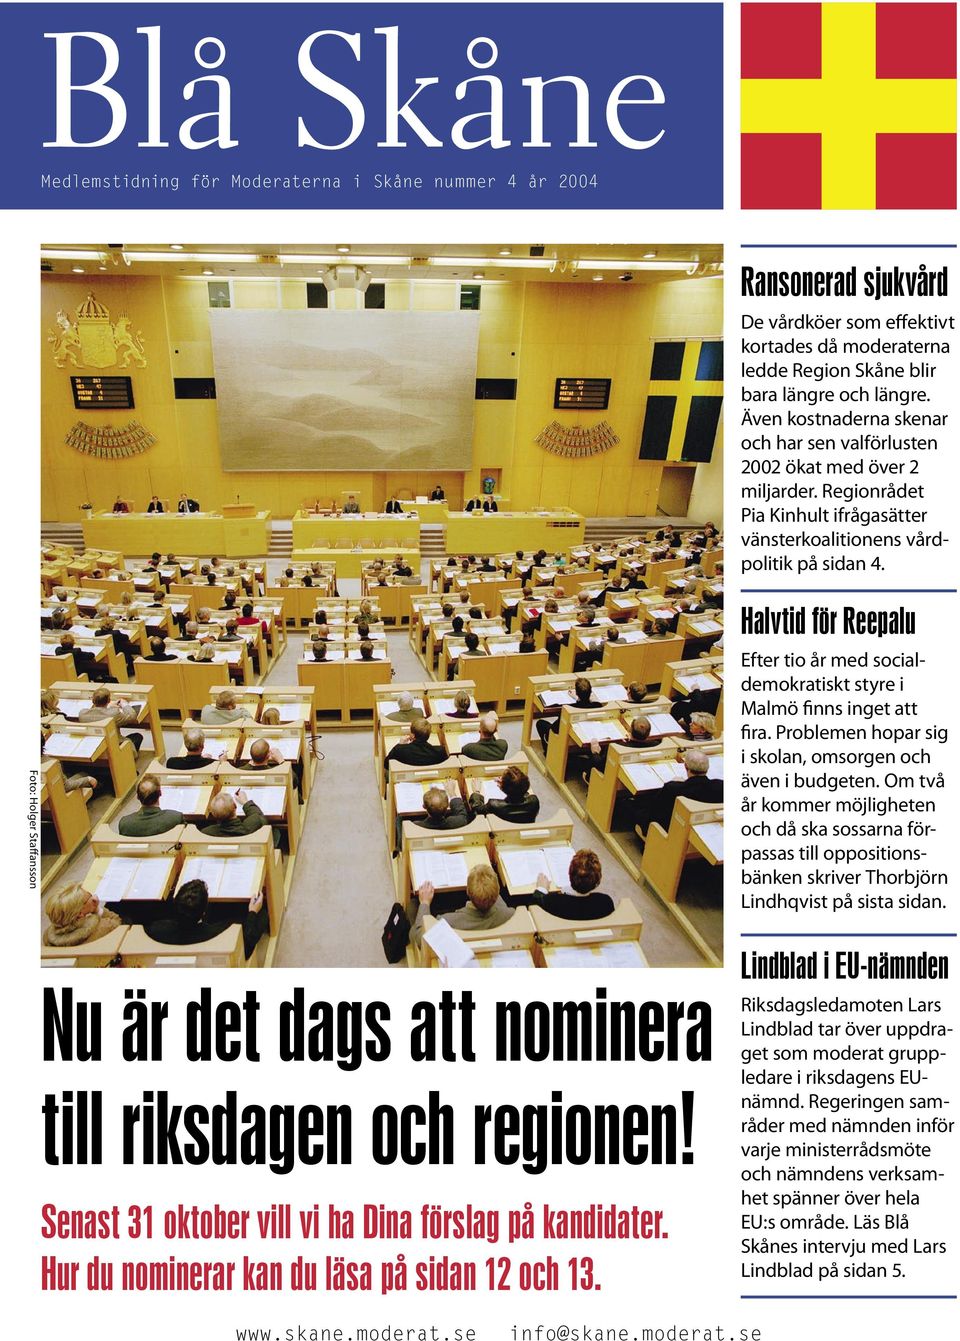 Foto: Holger Staffansson Nu är det dags att nominera till riksdagen och regionen! Senast 31 oktober vill vi ha Dina förslag på kandidater. Hur du nominerar kan du läsa på sidan 12 och 13.